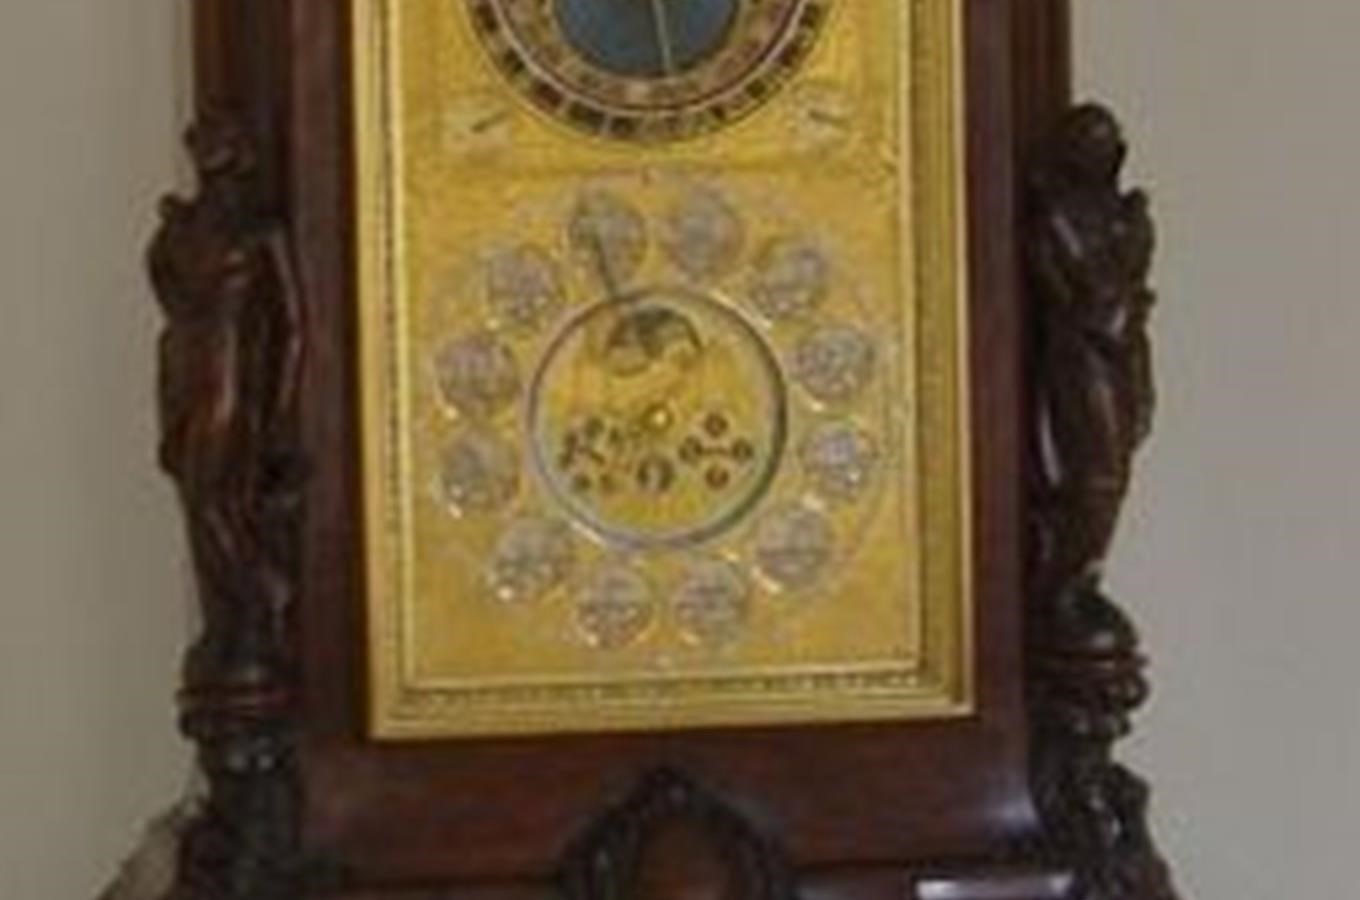 Pokojový orloj v Ostravském muzeu